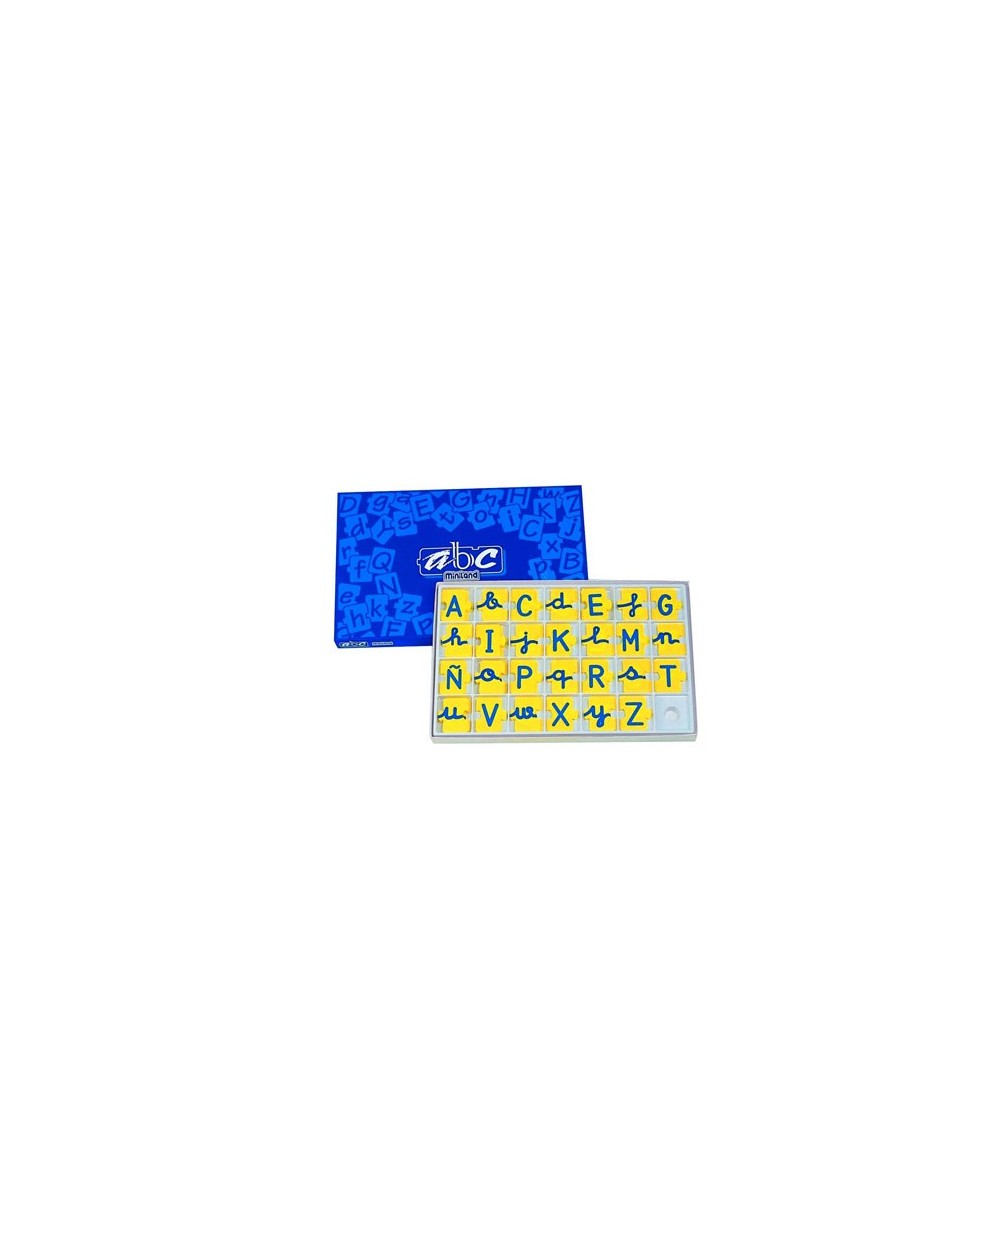 Juego miniland abecedario mayusculas y minusculas 168 piezas